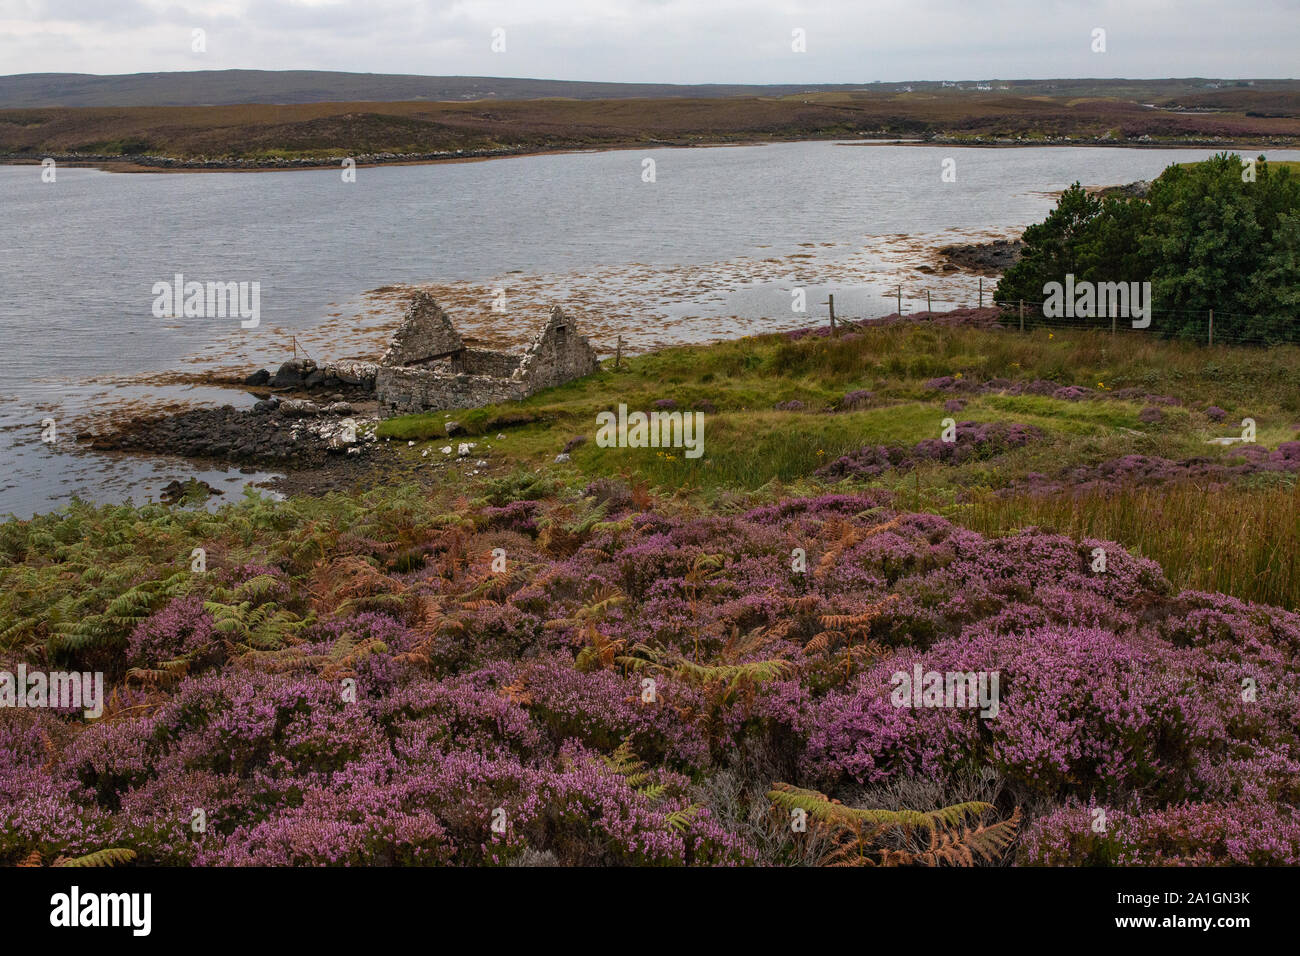 Vecchie case di pietra sono abbastanza comuni siti in tutta la Scozia. Immaginate quali storie potrebbero dire! Foto Stock